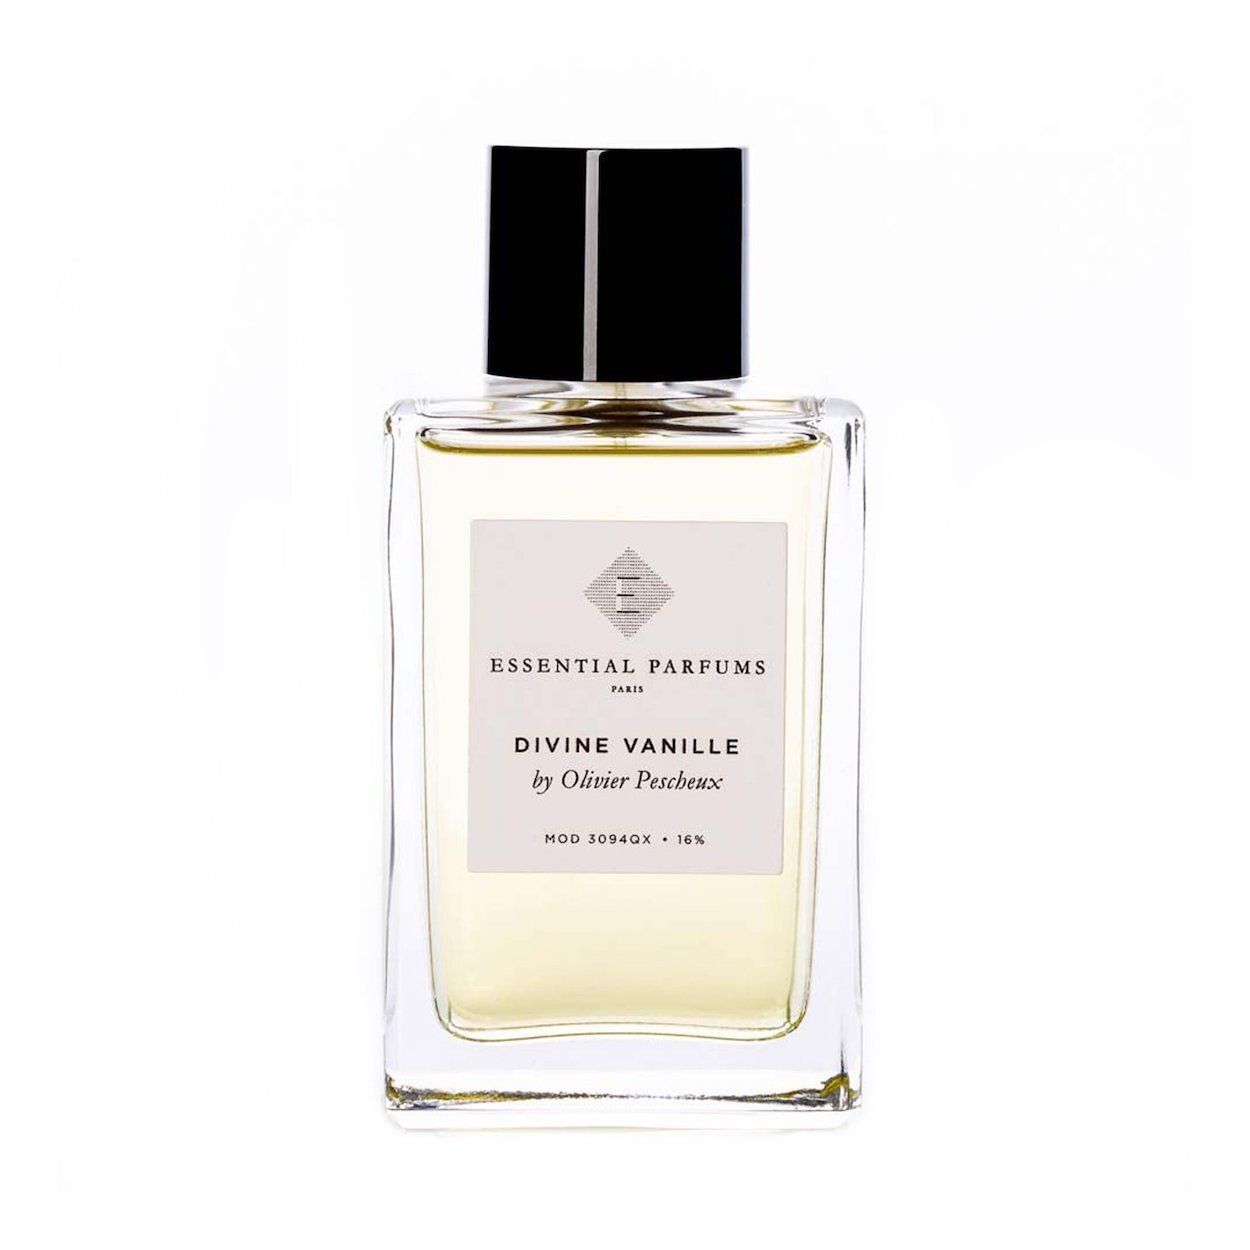 Essential Parfums Divine Vanille EDP 100ml